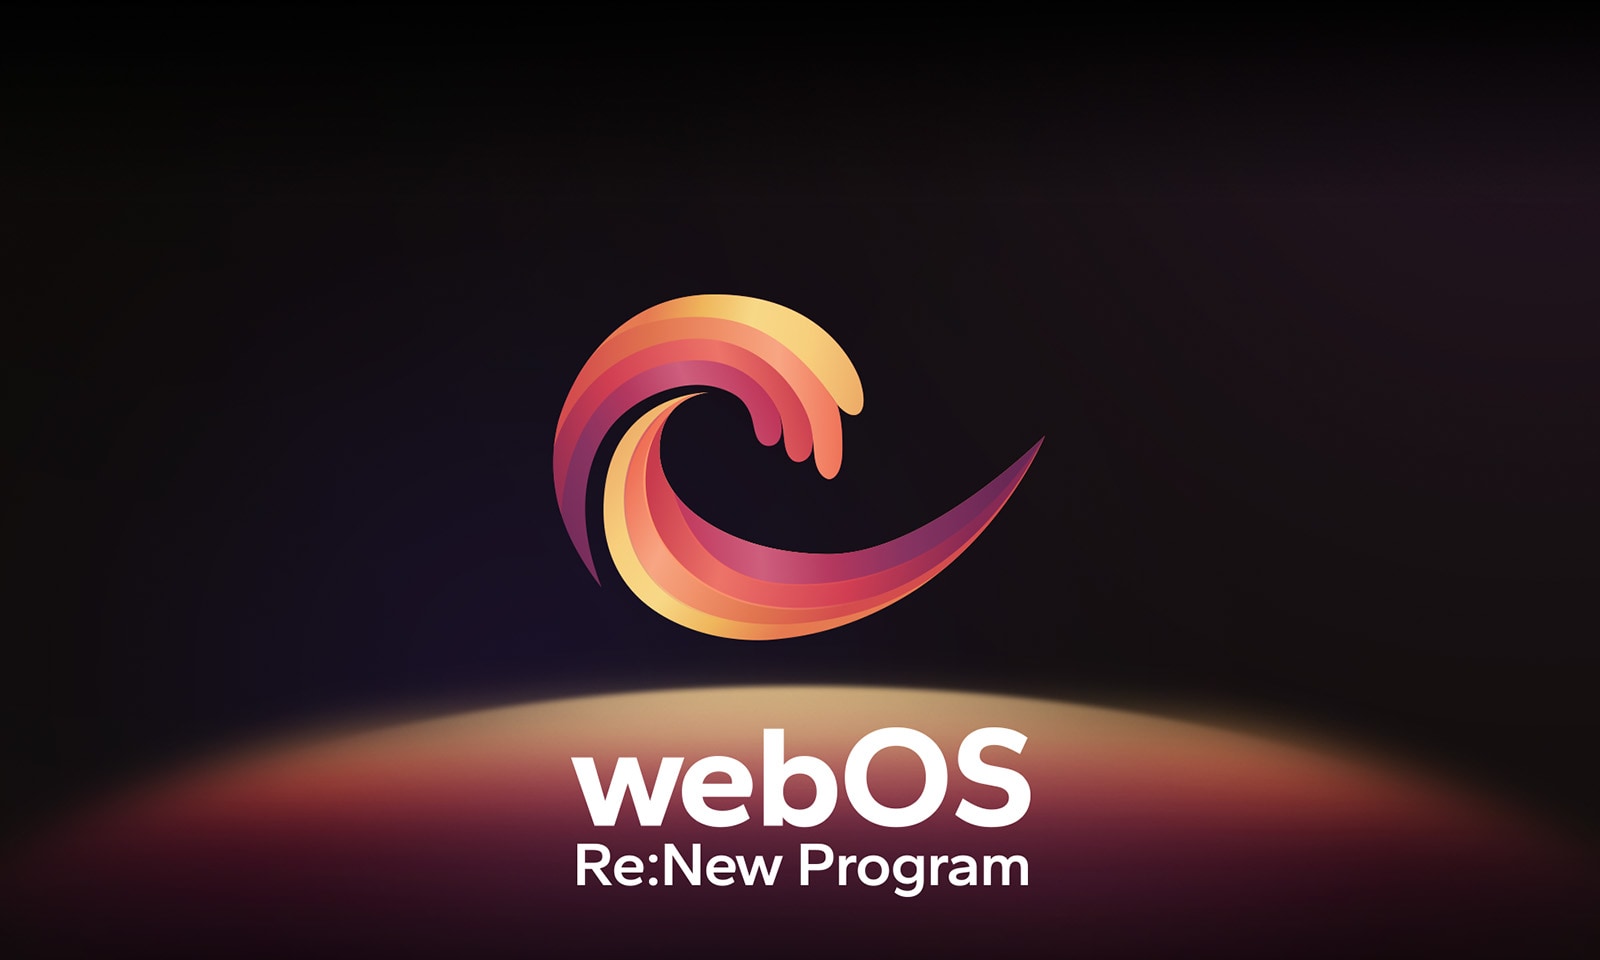 شعار webOS يحوم في المنتصف على خلفية سوداء، والمساحة أدناه مضاءة بألوان الشعار الأحمر والبرتقالي والأصفر. توجد عبارة "webOS Re:New Program" أسفل الشعار.